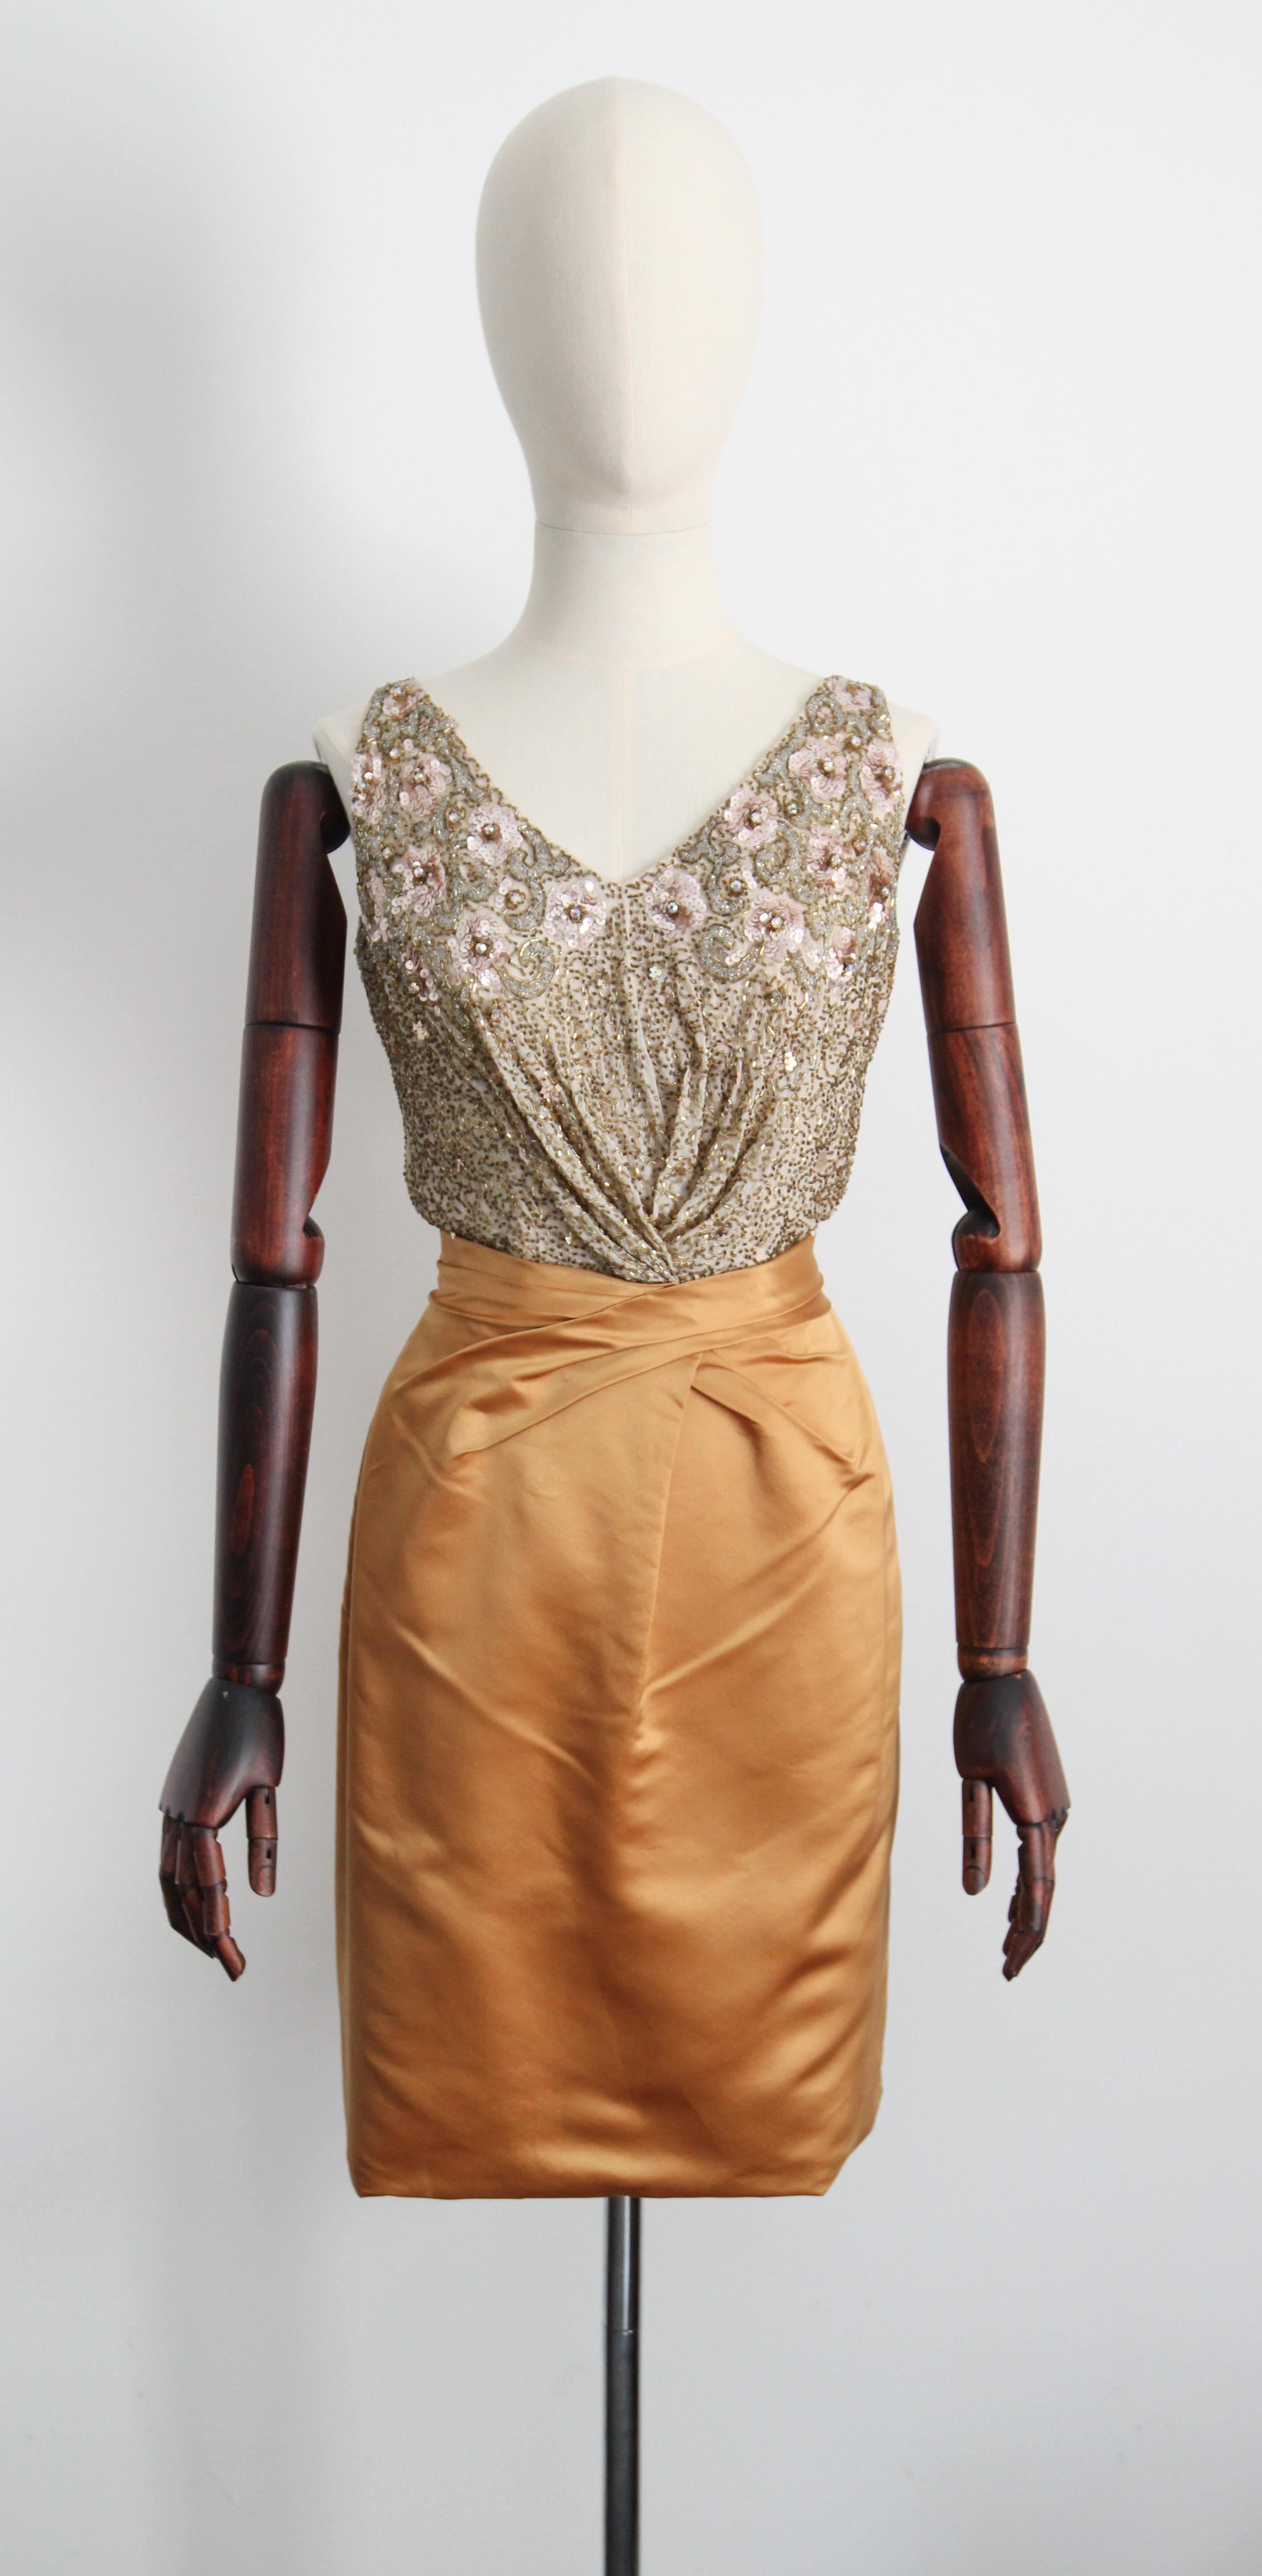 Dieses prächtige Kleid von Ceil Chapman aus den 1950er Jahren in klassischer Silhouette besteht aus goldfarbenem Satin, kontrastiert von einem cremefarbenen Seidenmieder, das mit goldenen Glasperlen, Seide und rosafarbenen Paillettenblüten verziert